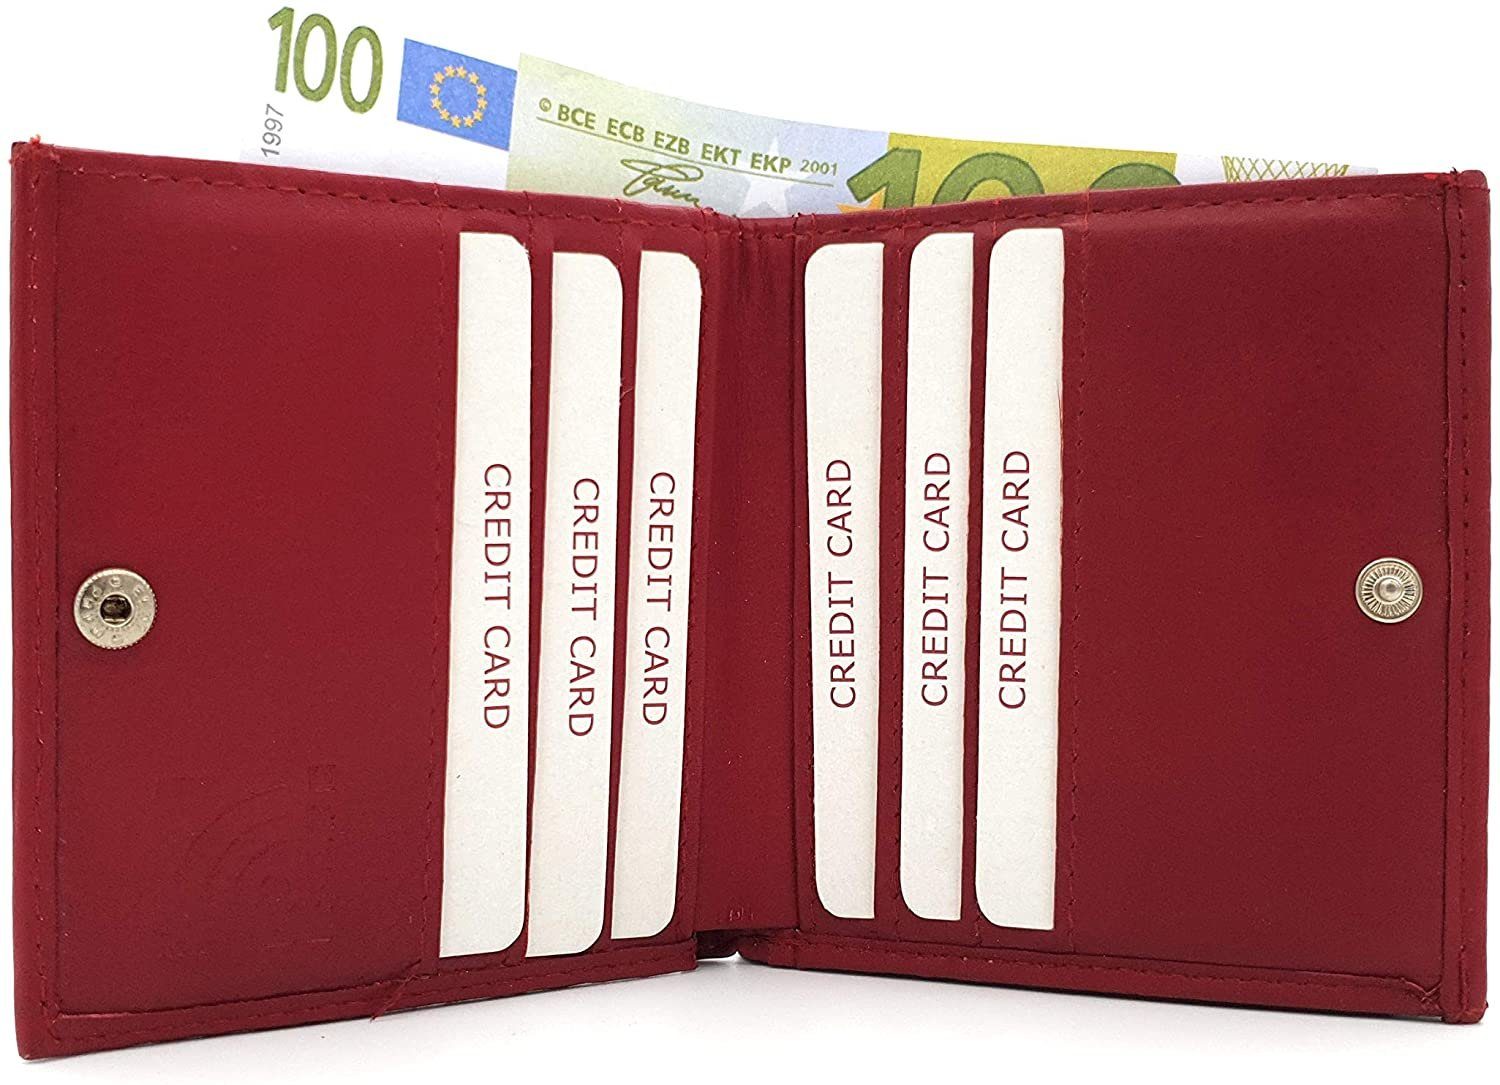 mit Schutz, Schachtel Geldbörse RFID Wiener JOCKEY Portemonnaie Leder echt rot CLUB